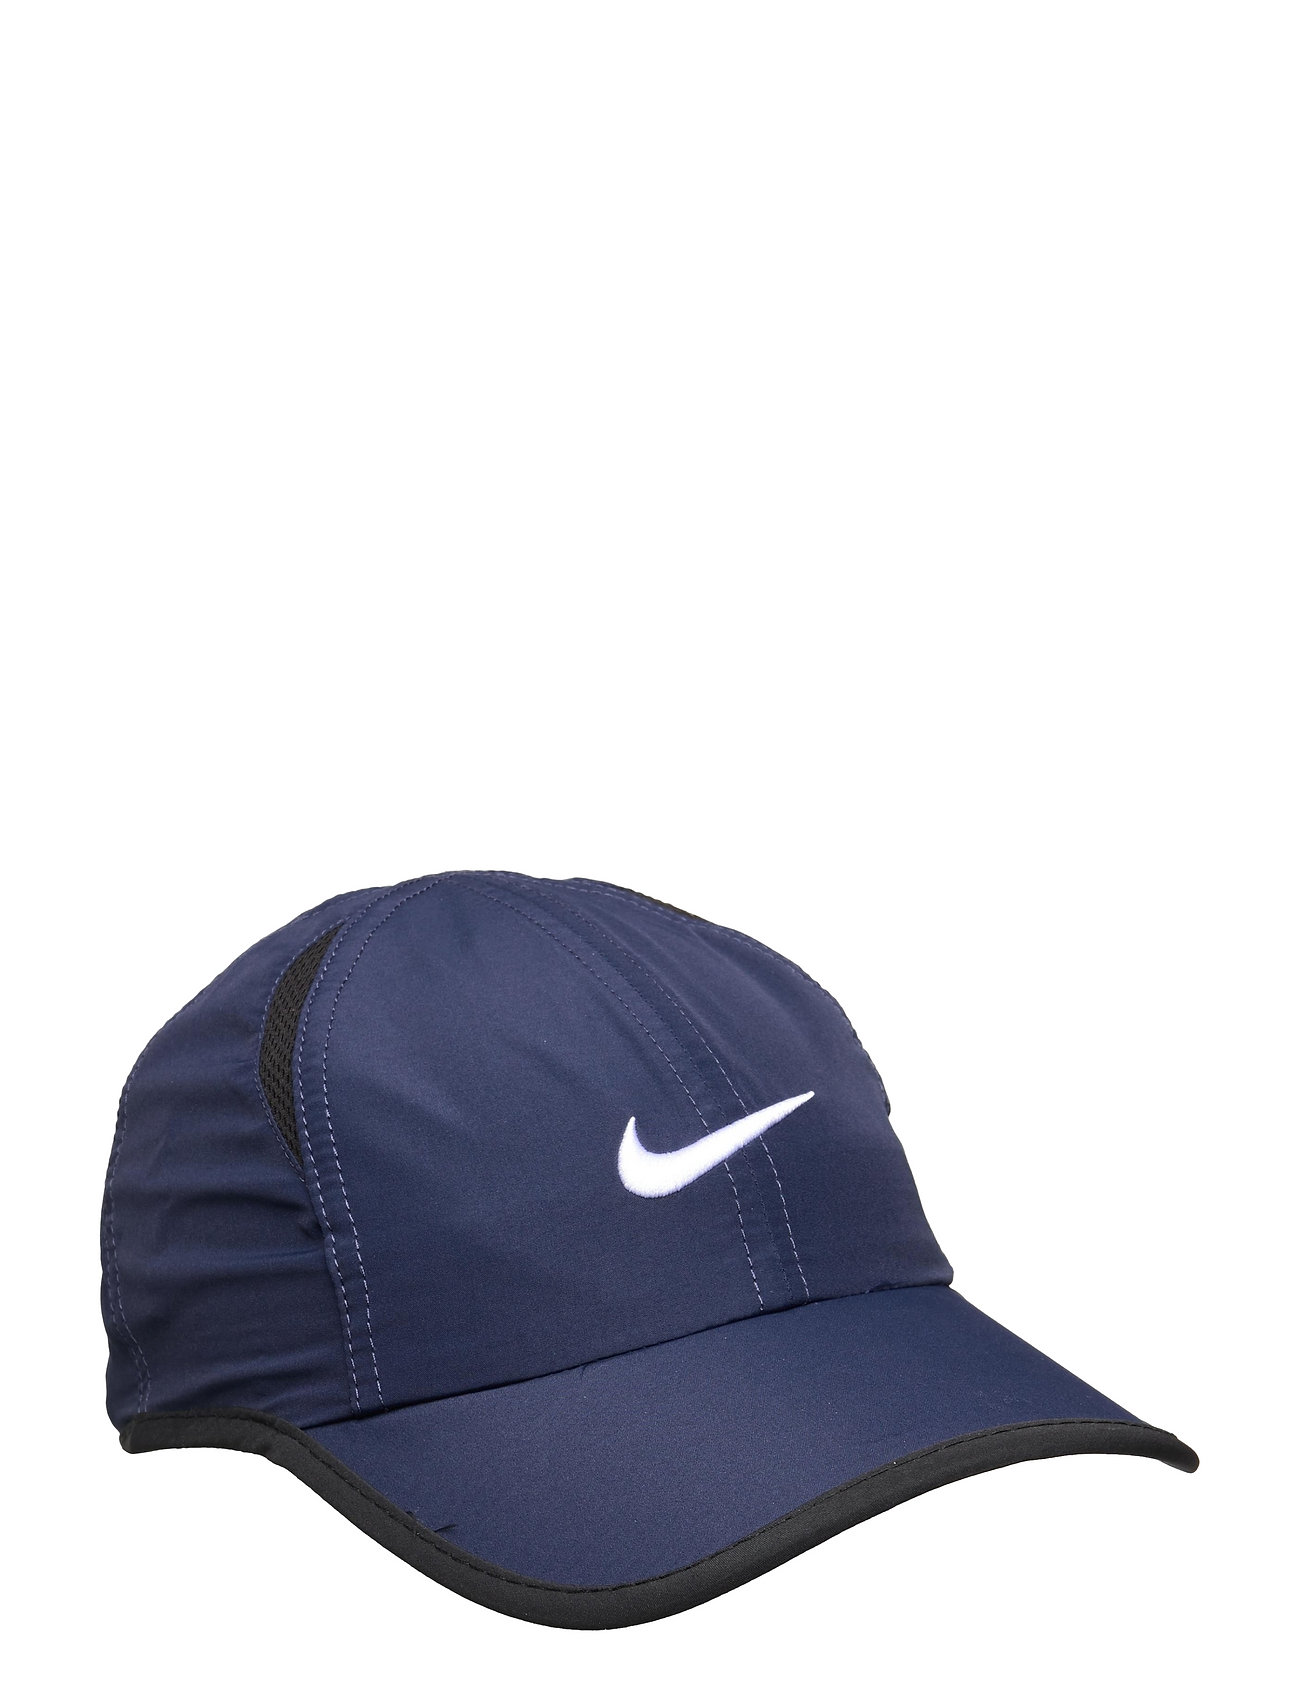 Nan Featherlight Cap / Nan Featherlight Cap Sport Headwear Caps Blue Nike